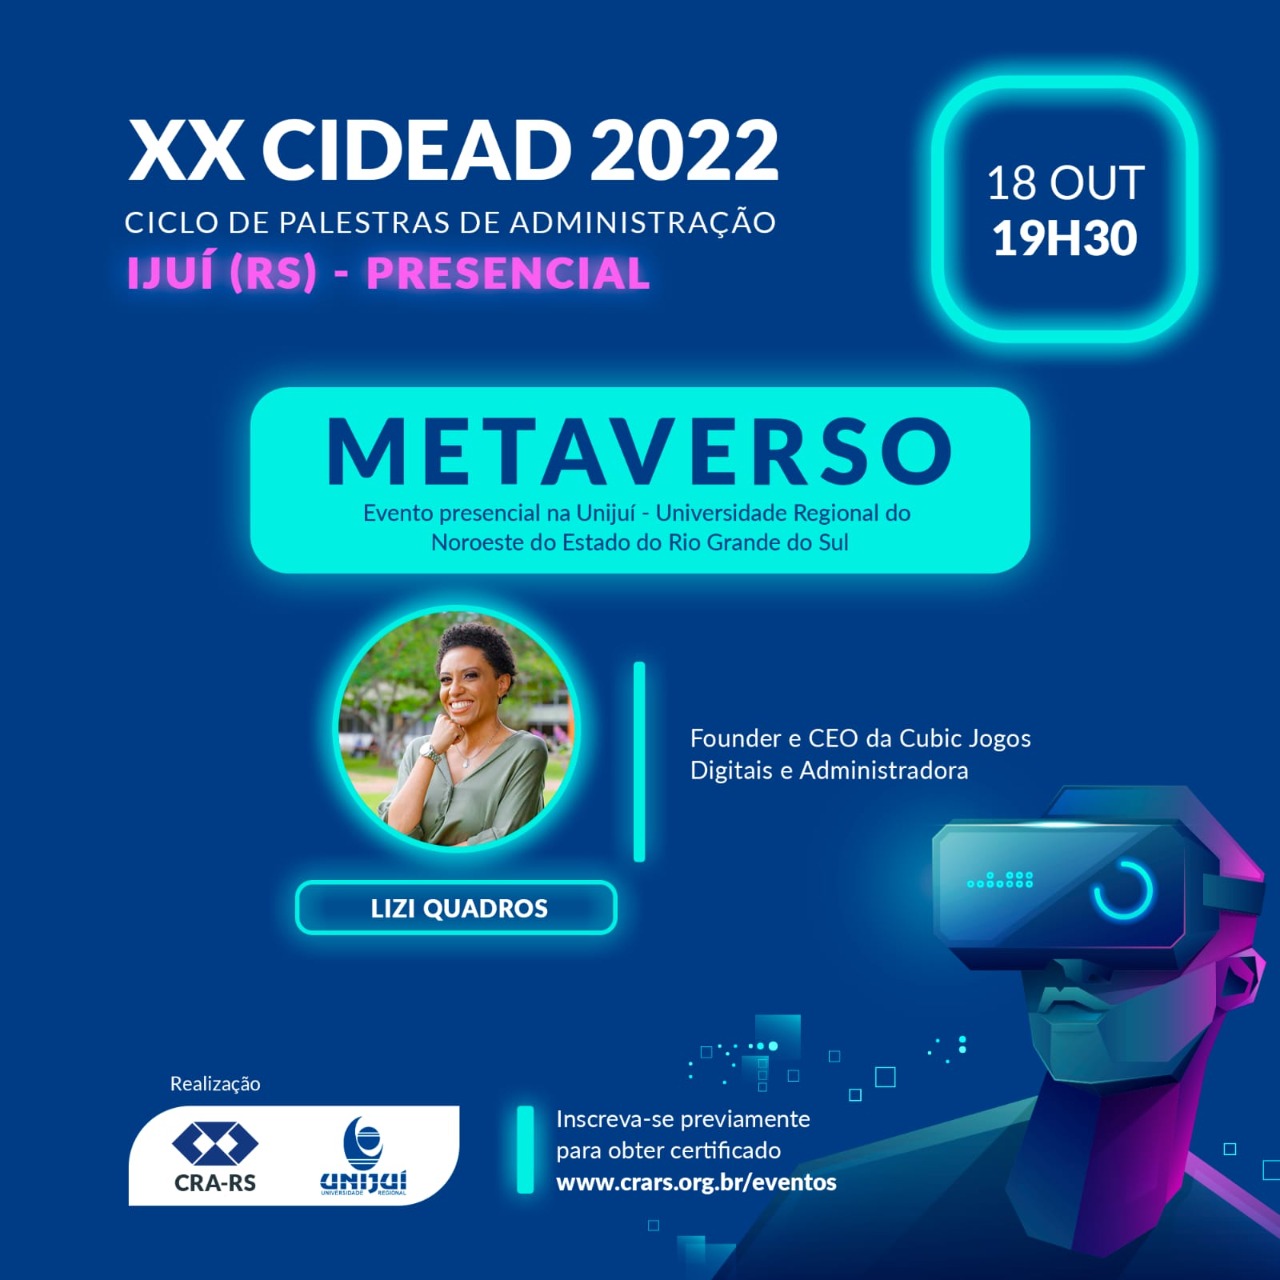 Participe do XX CIDEAD 2022 em Ijuí